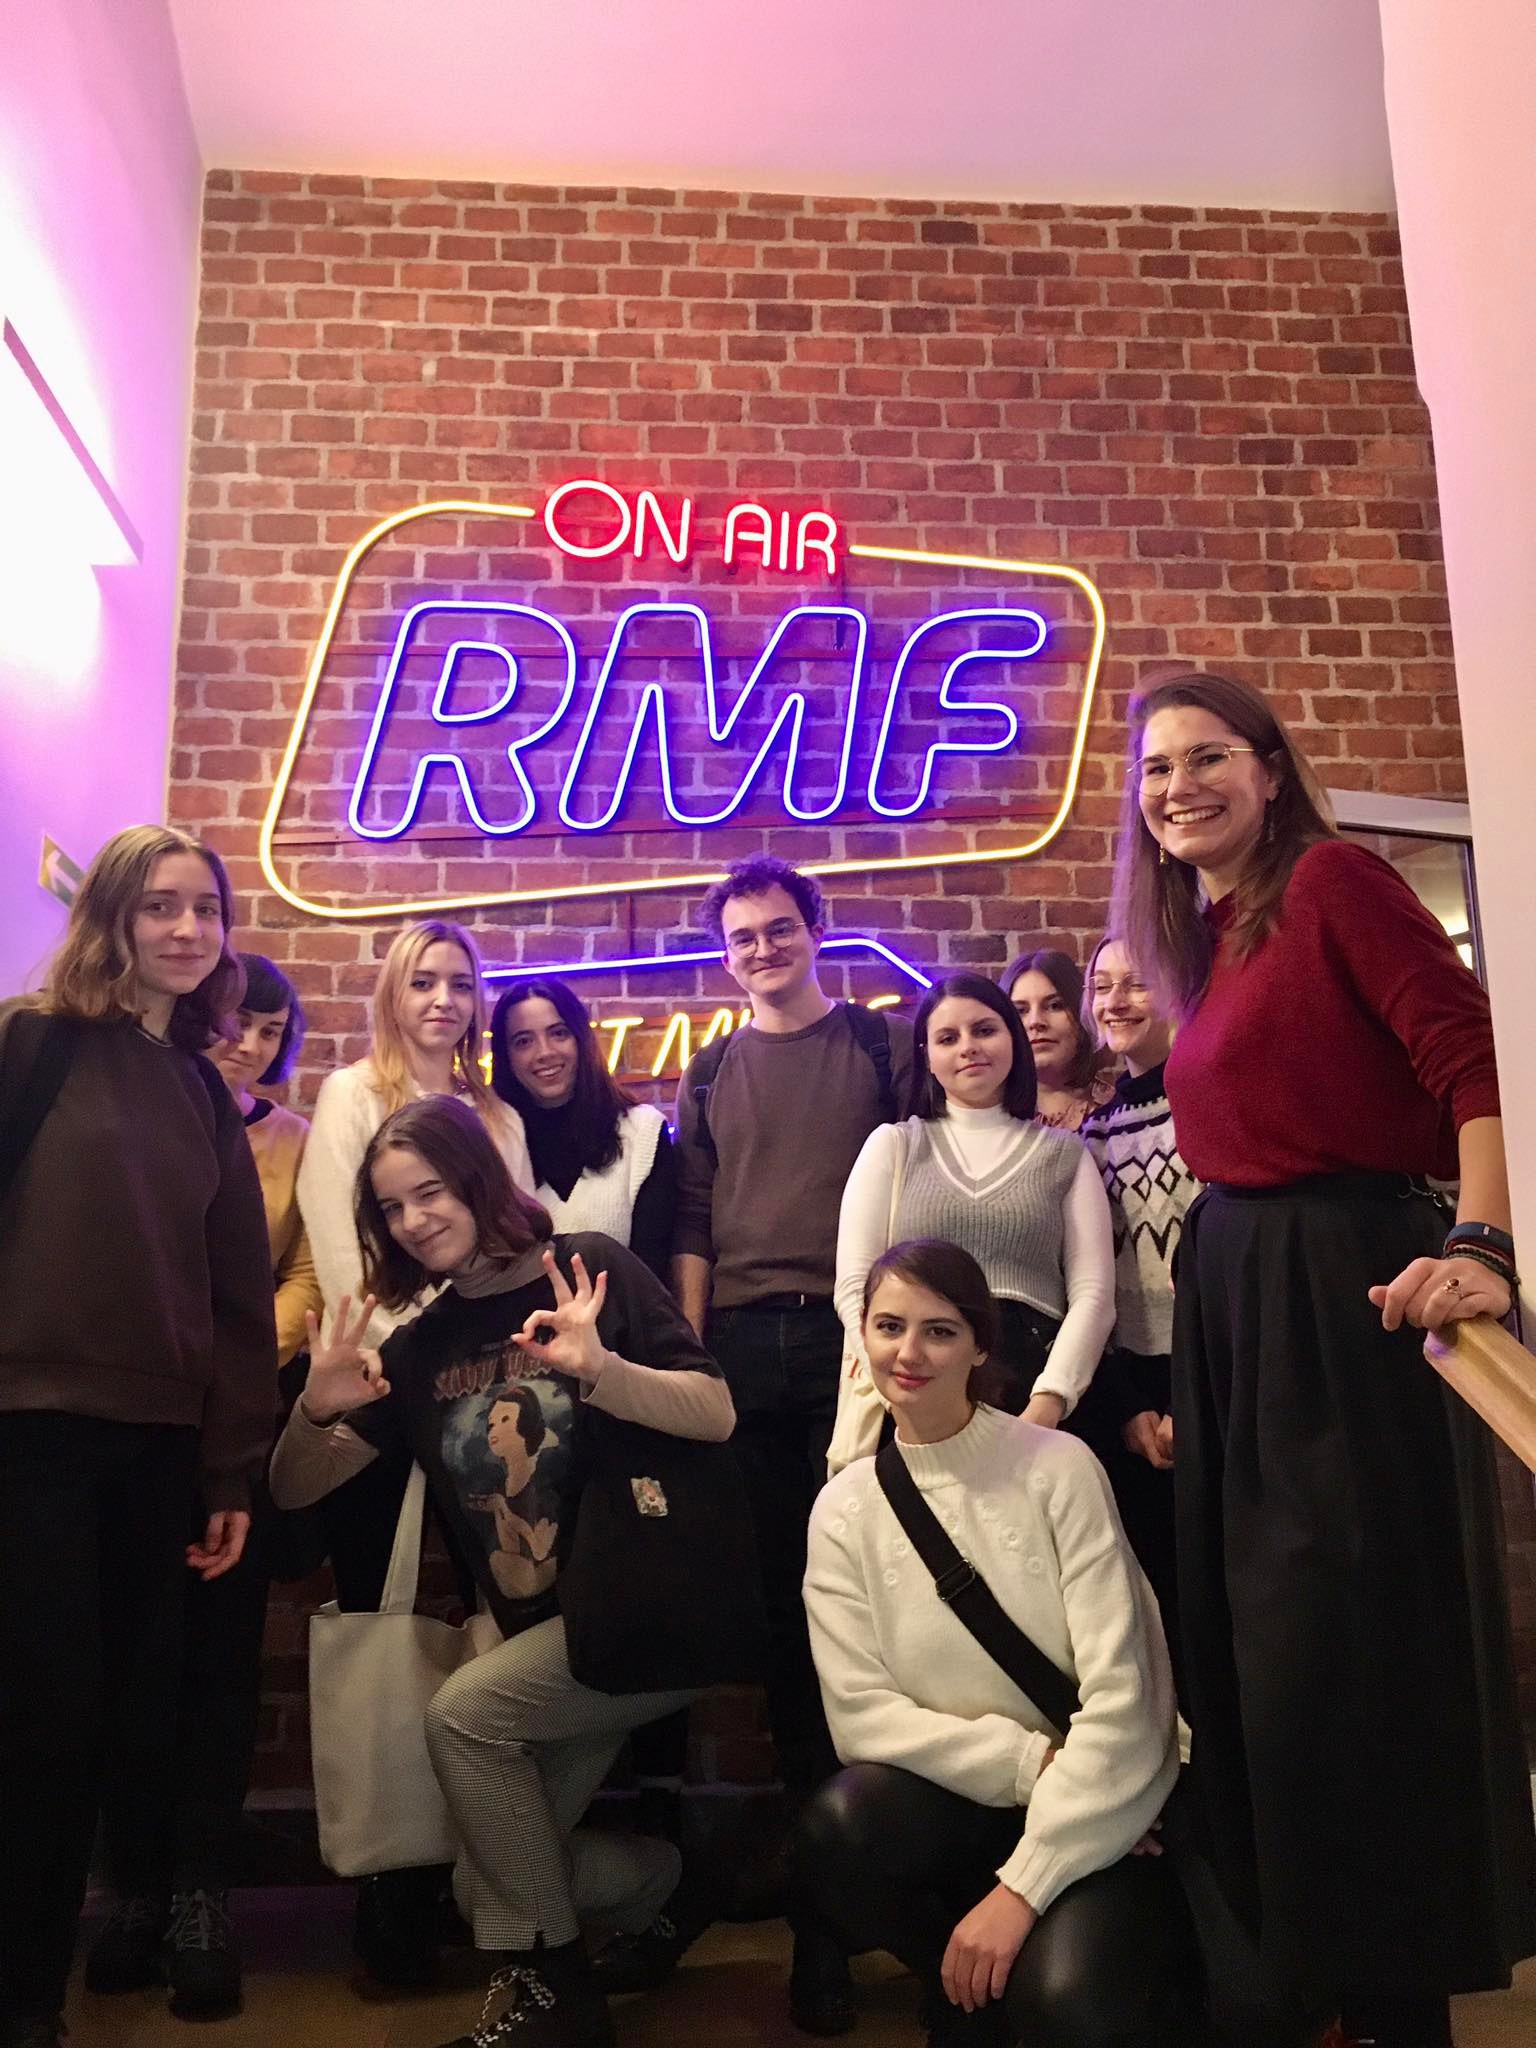 [Grafika: zdjęcie przedstawia grupę studentów oraz prowadzącą na tle napisu "On air RMF"]